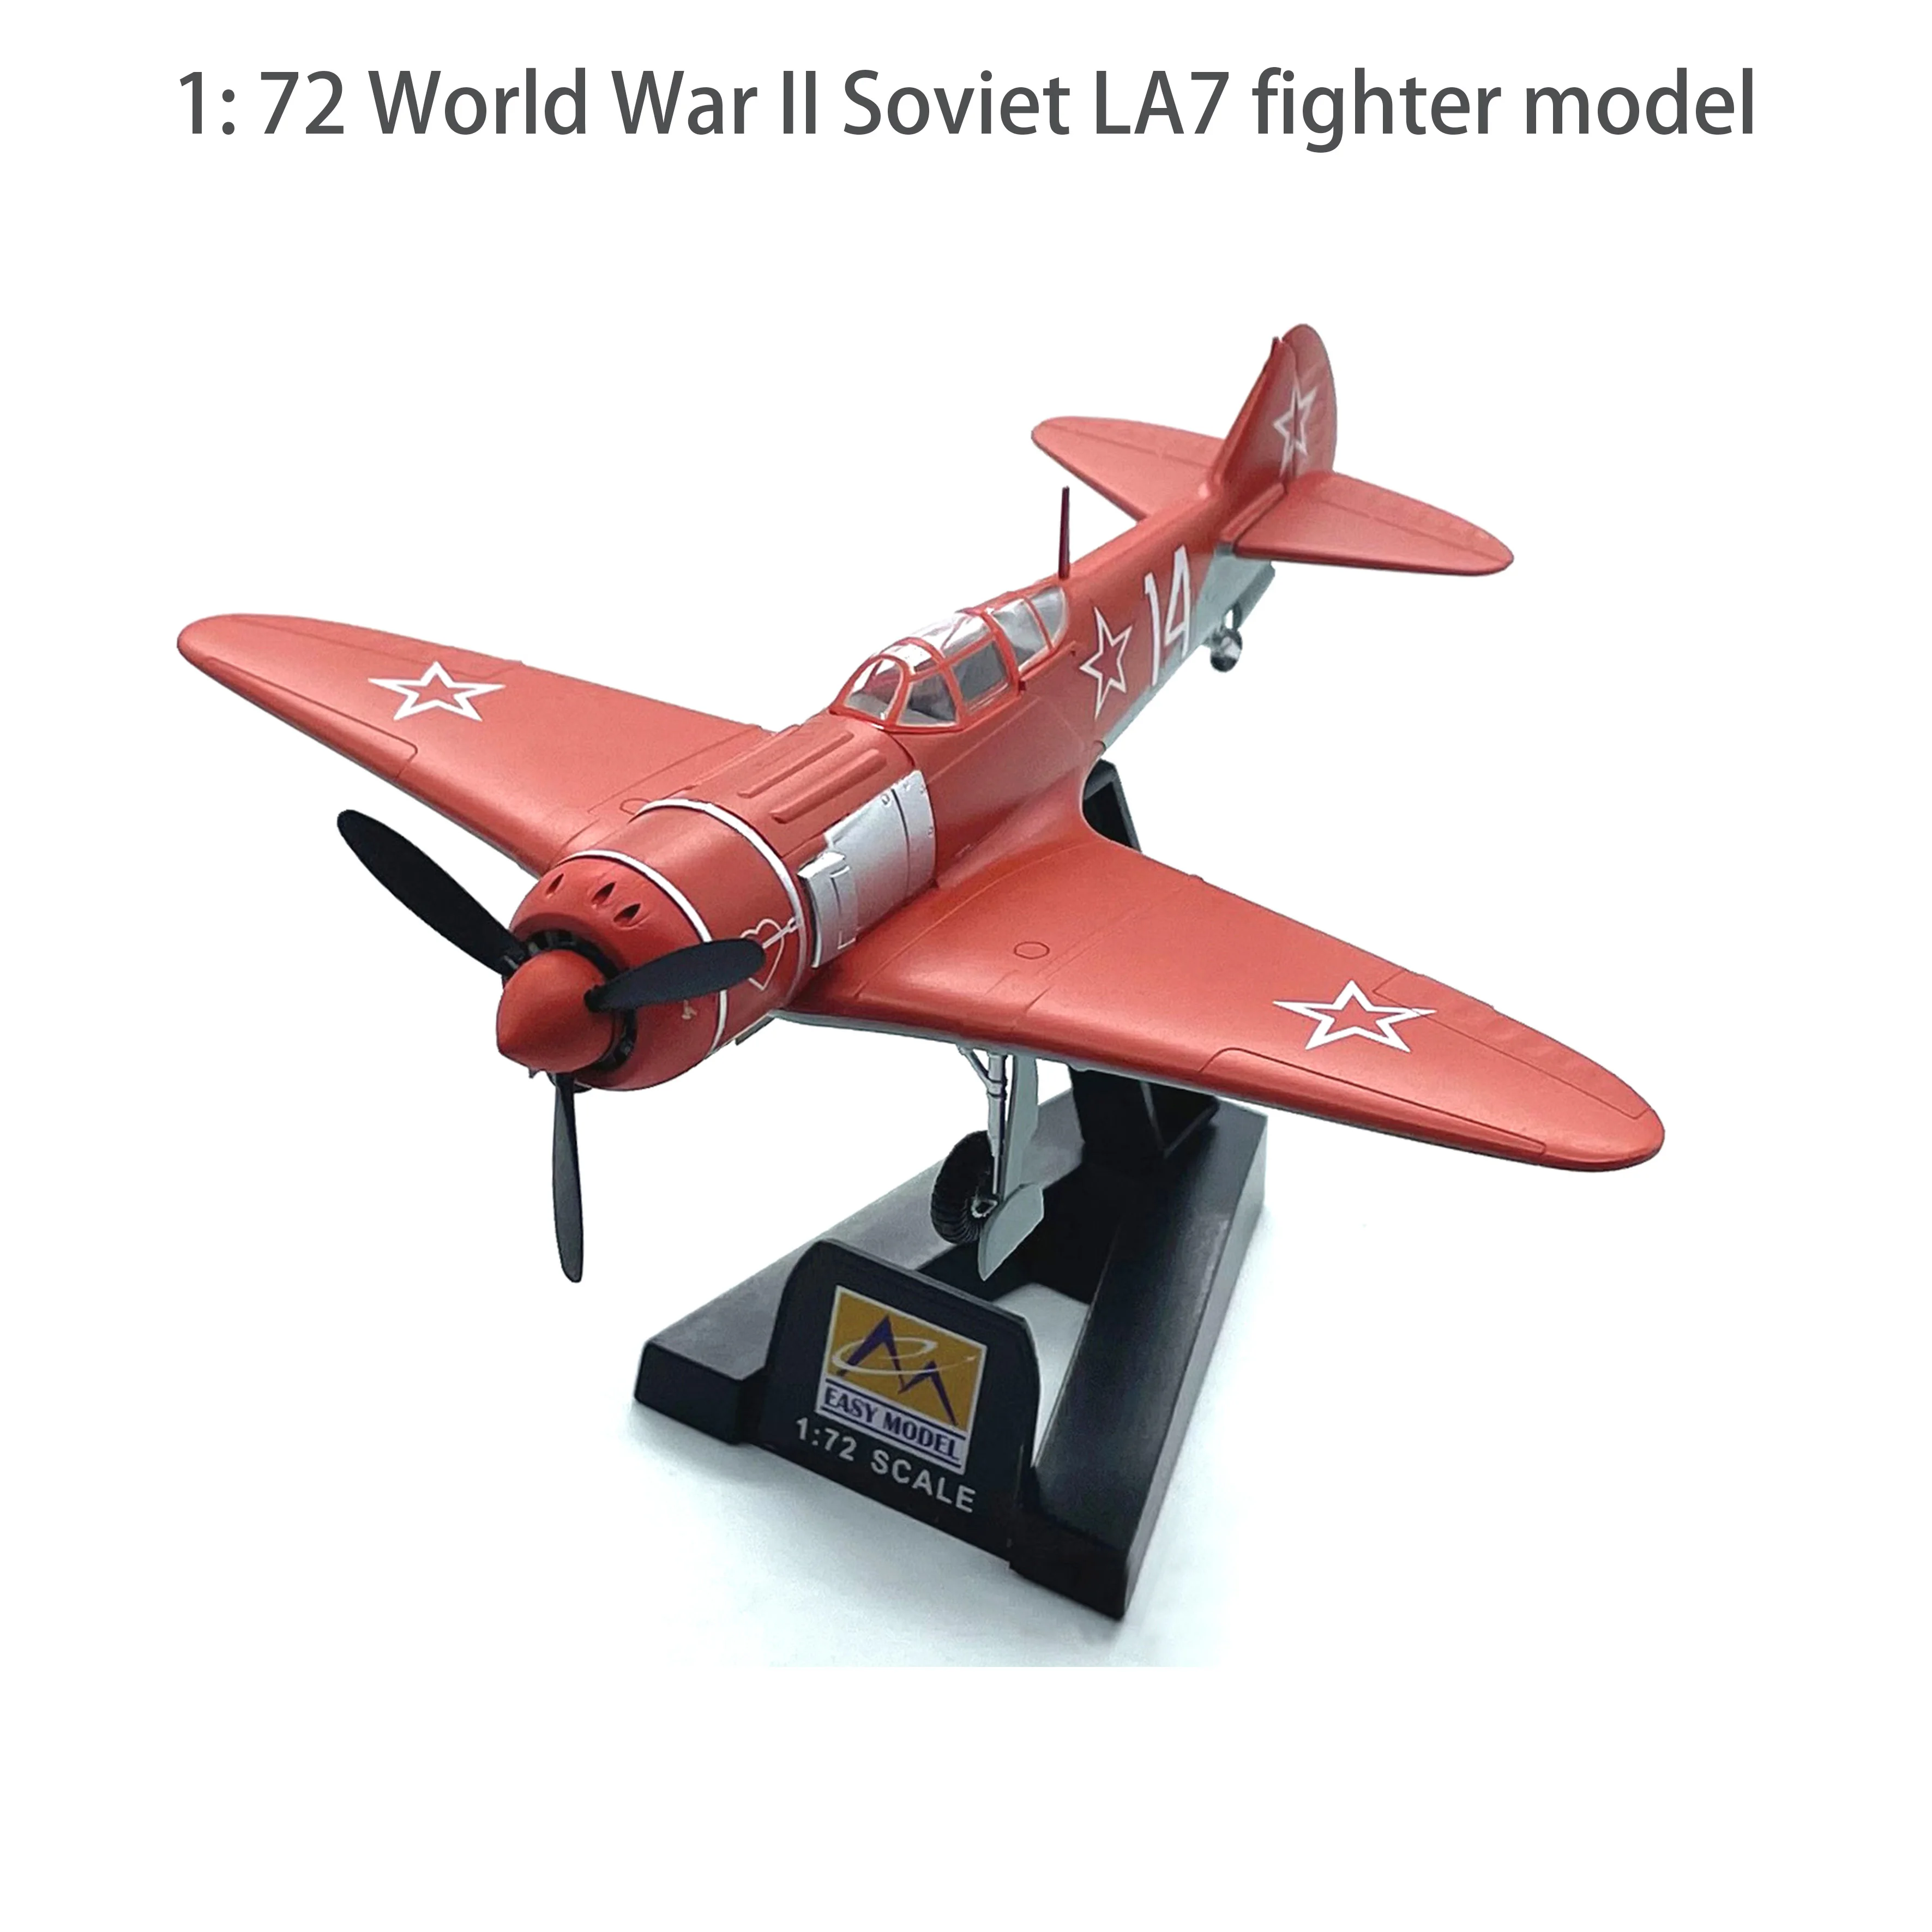 

Модель советского истребителя LA7 времен Второй мировой войны, модель Trumpeter 36334, коллекционная готовая продукция